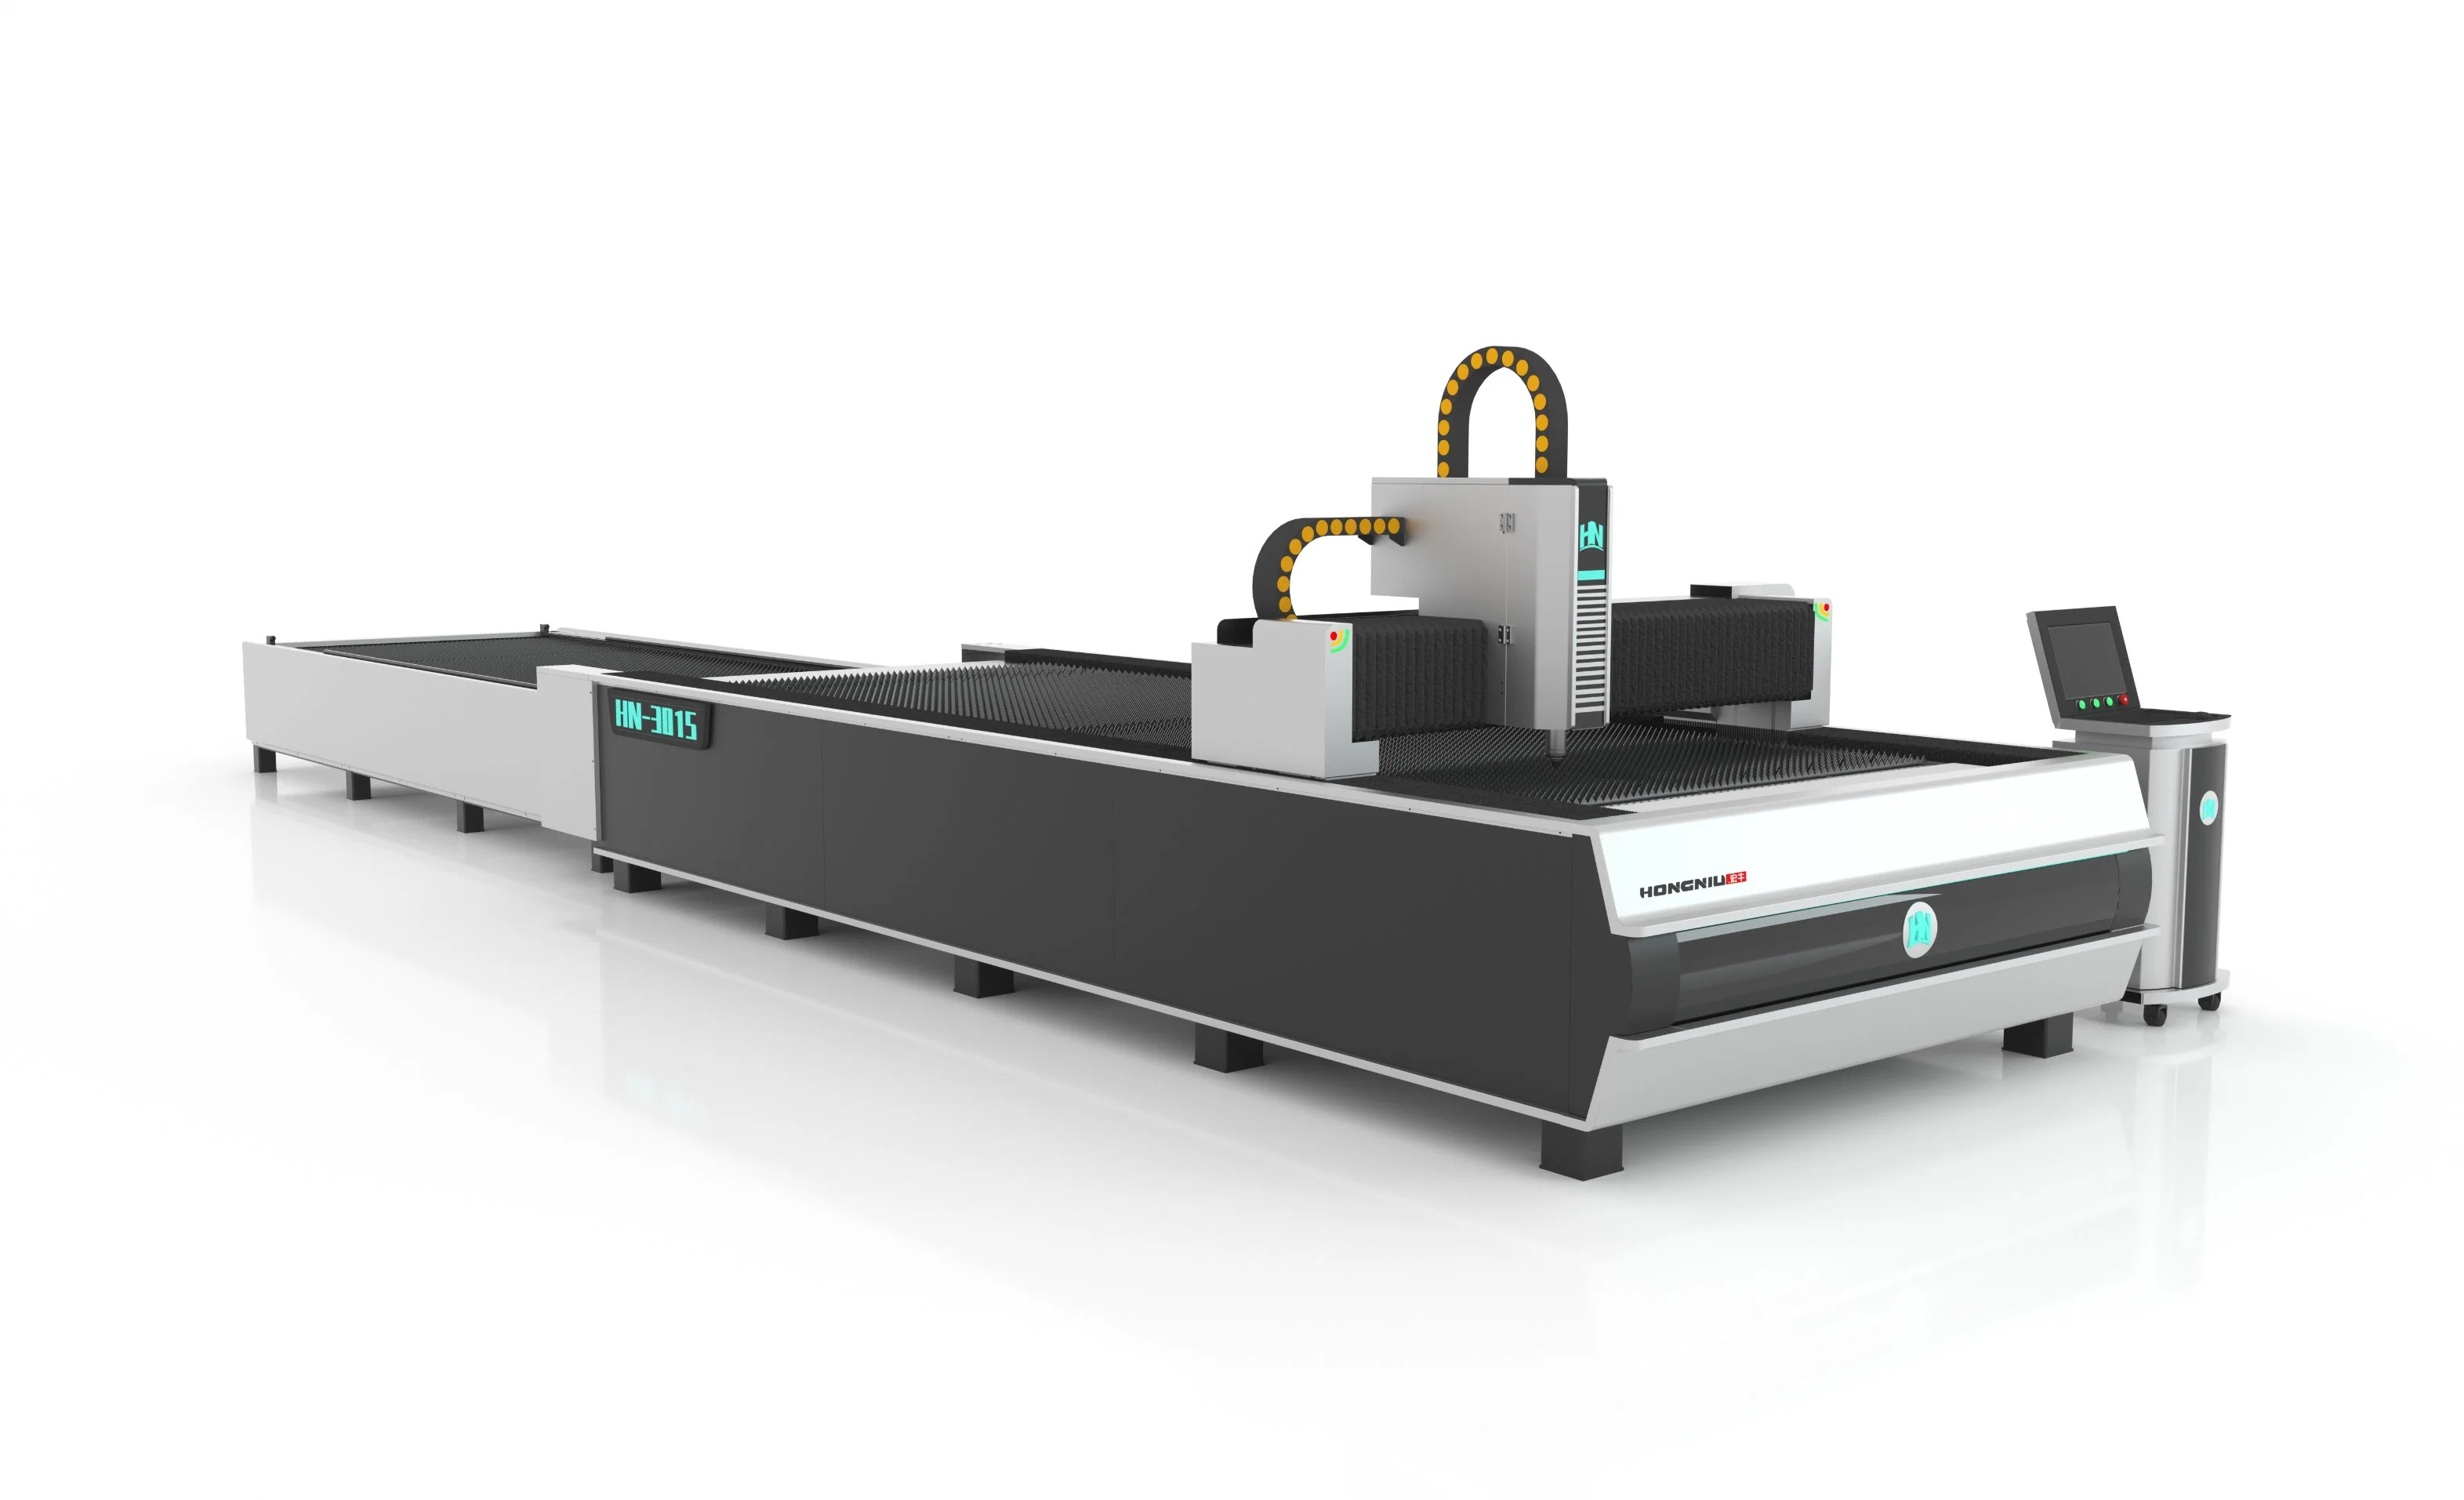 1kw 2kw 3kw Cutter 3015 Metal Laser Cutting Machine CNC